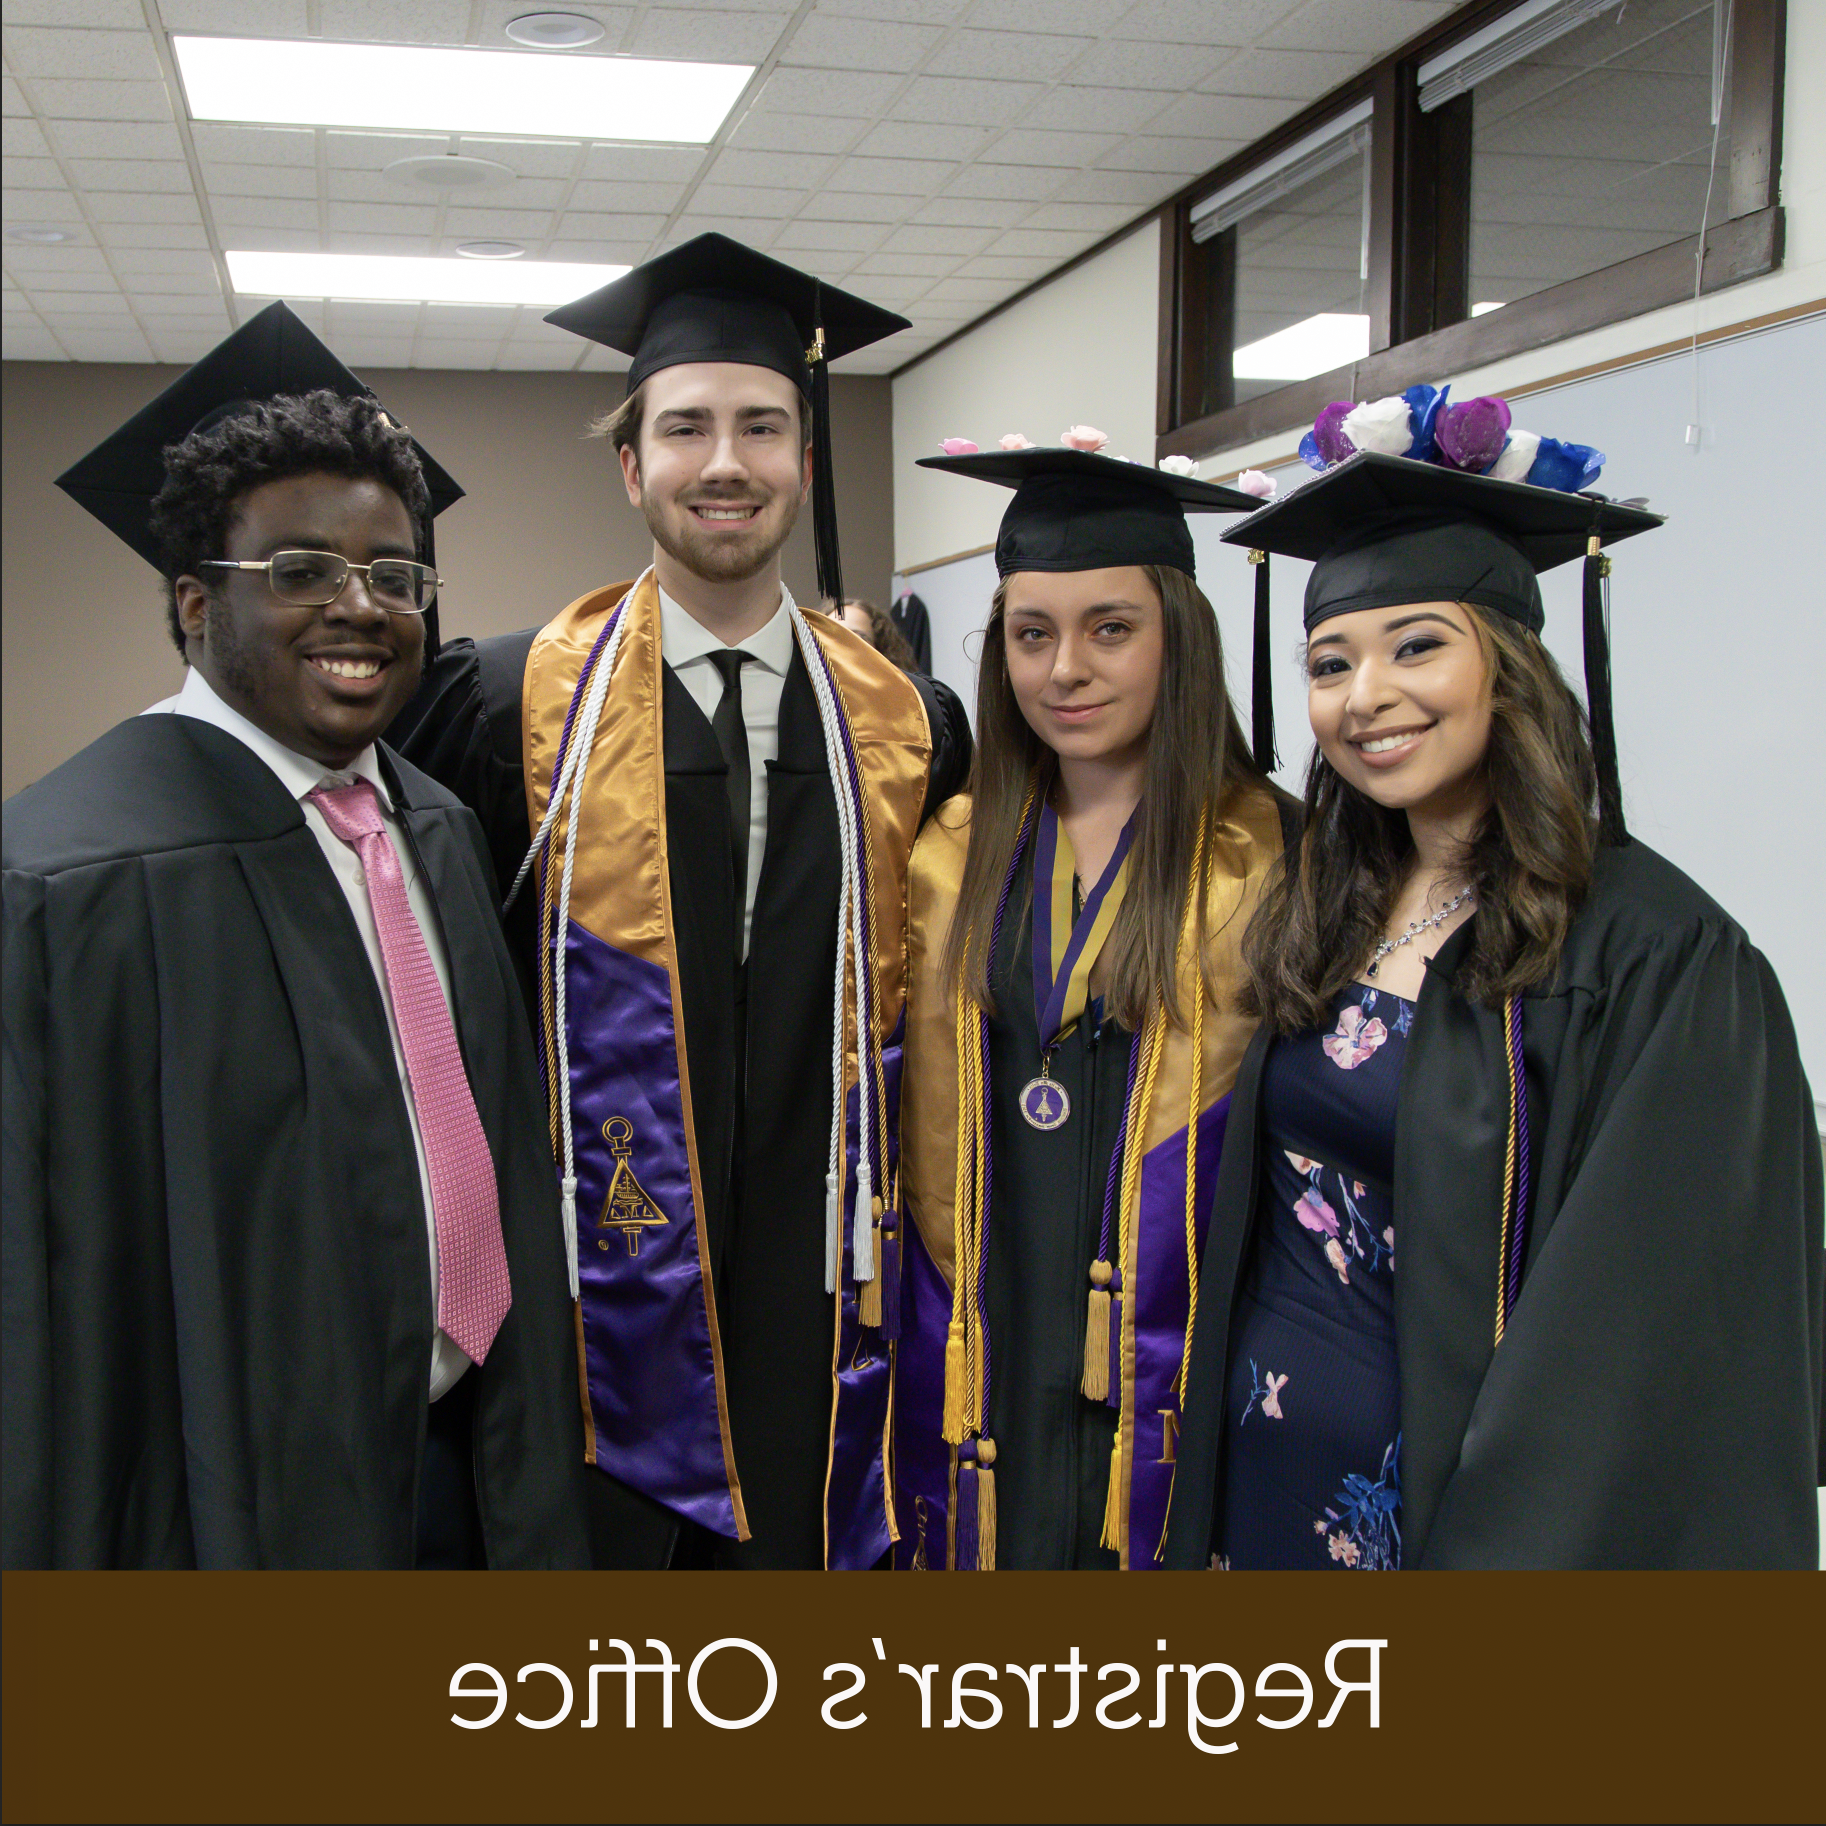 四个毕业生戴着帽子，穿着学士服